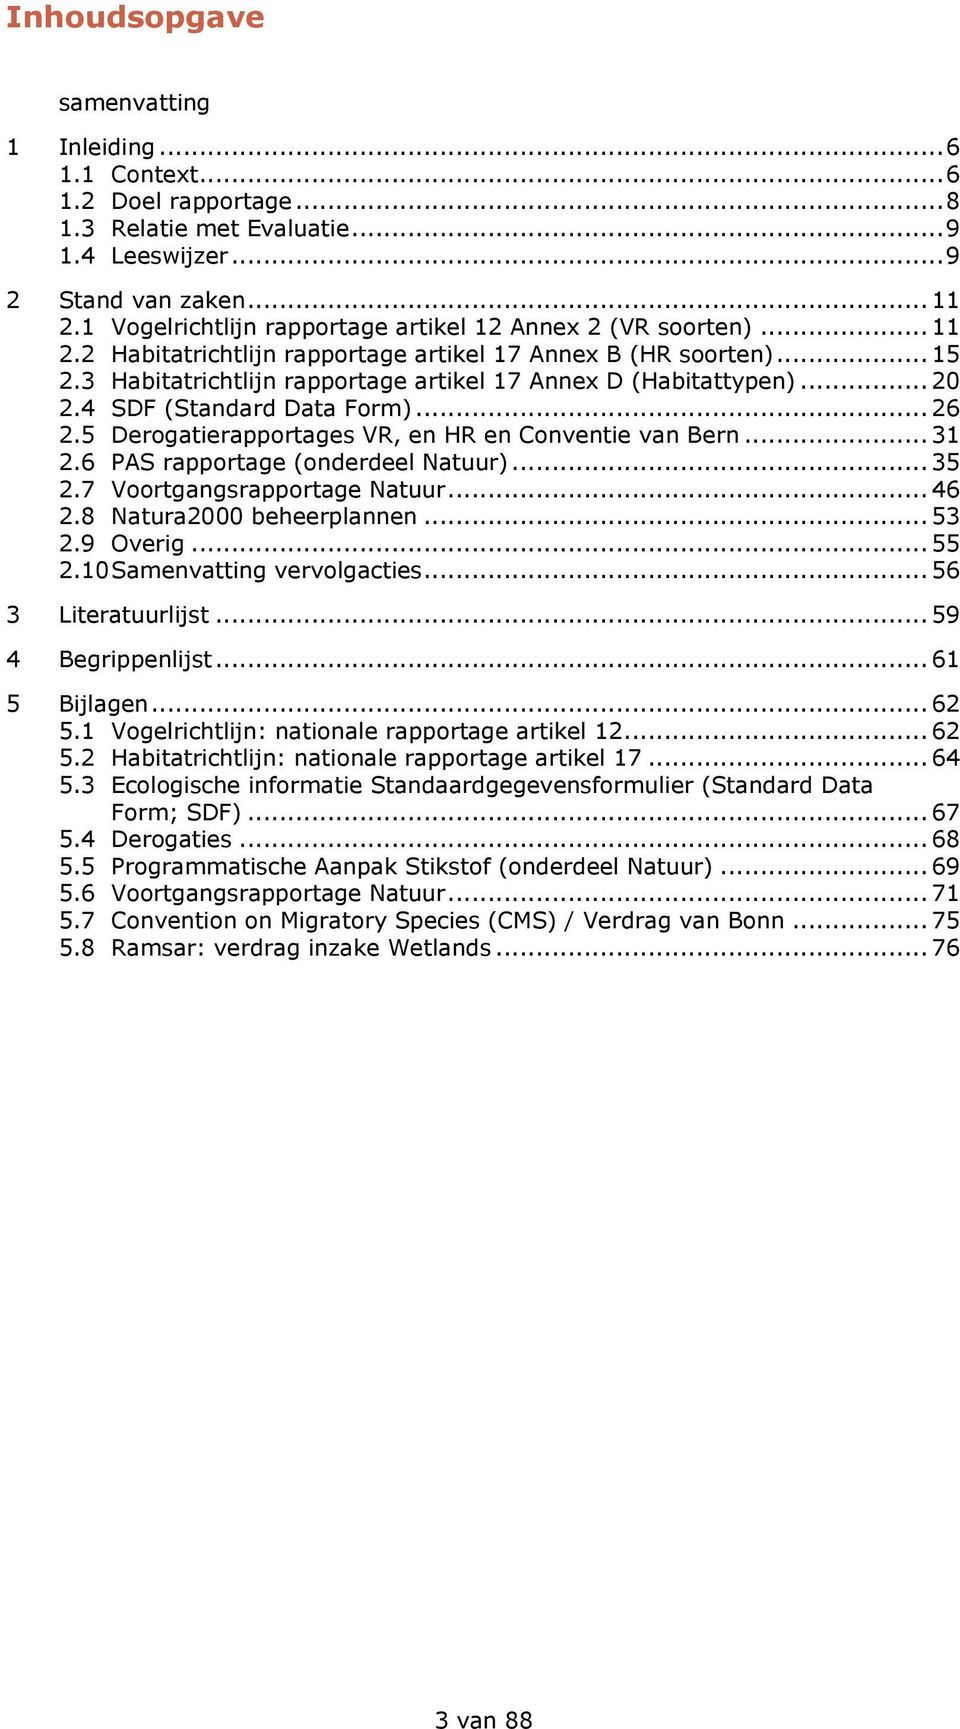 3 Habitatrichtlijn rapportage artikel 17 Annex D (Habitattypen)... 20 2.4 SDF (Standard Data Form)... 26 2.5 Derogatierapportages VR, en HR en Conventie van Bern... 31 2.